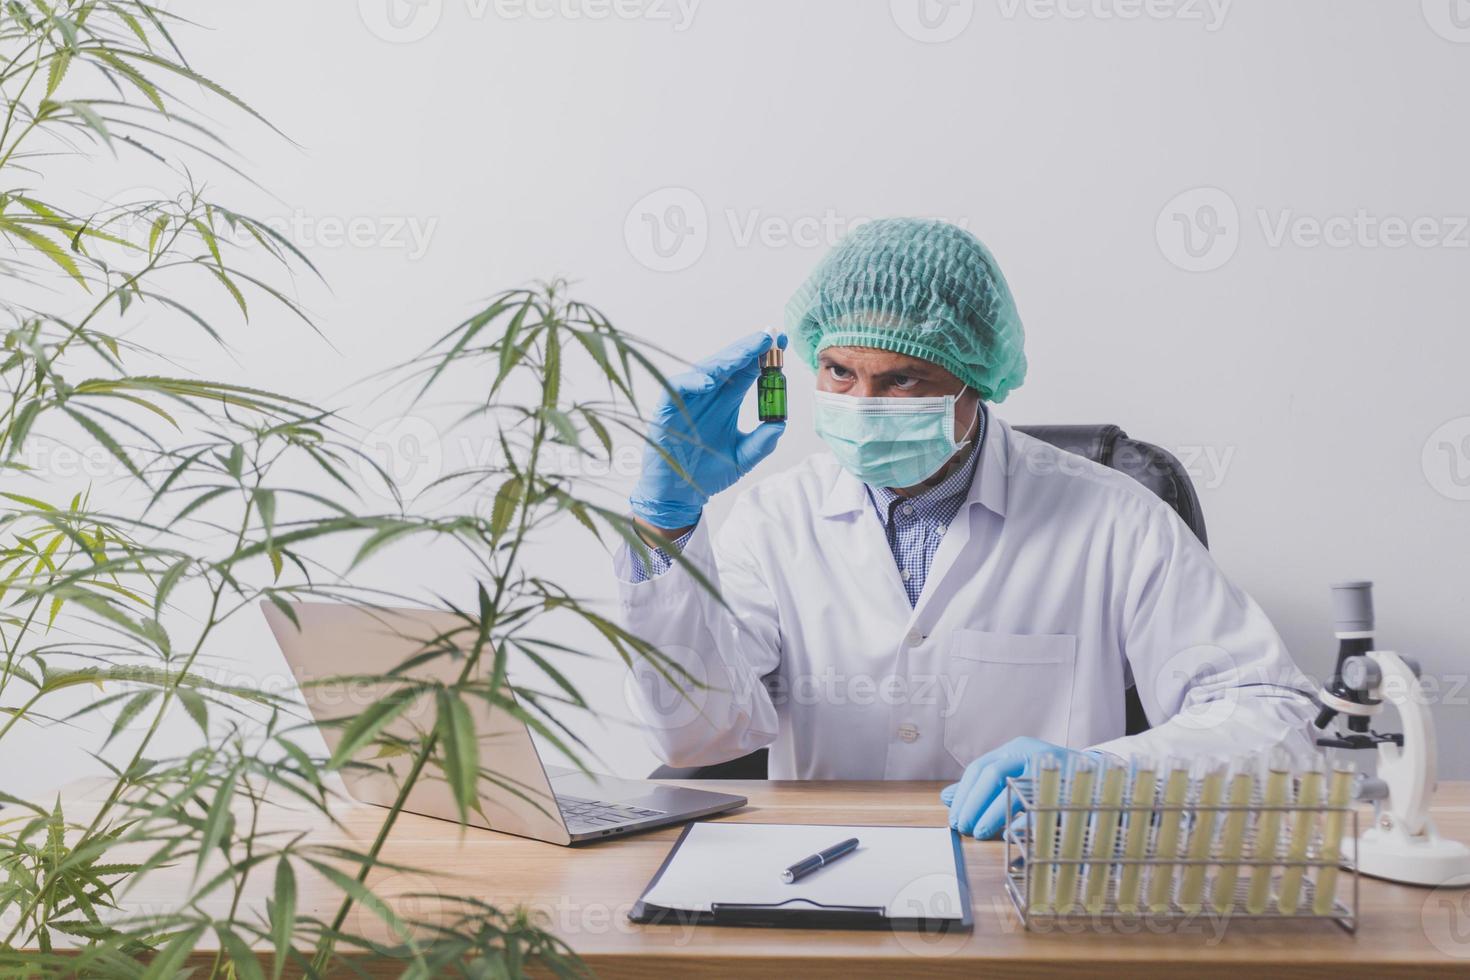 pesquisadores de cannabis estão fazendo experimentos científicos. foto